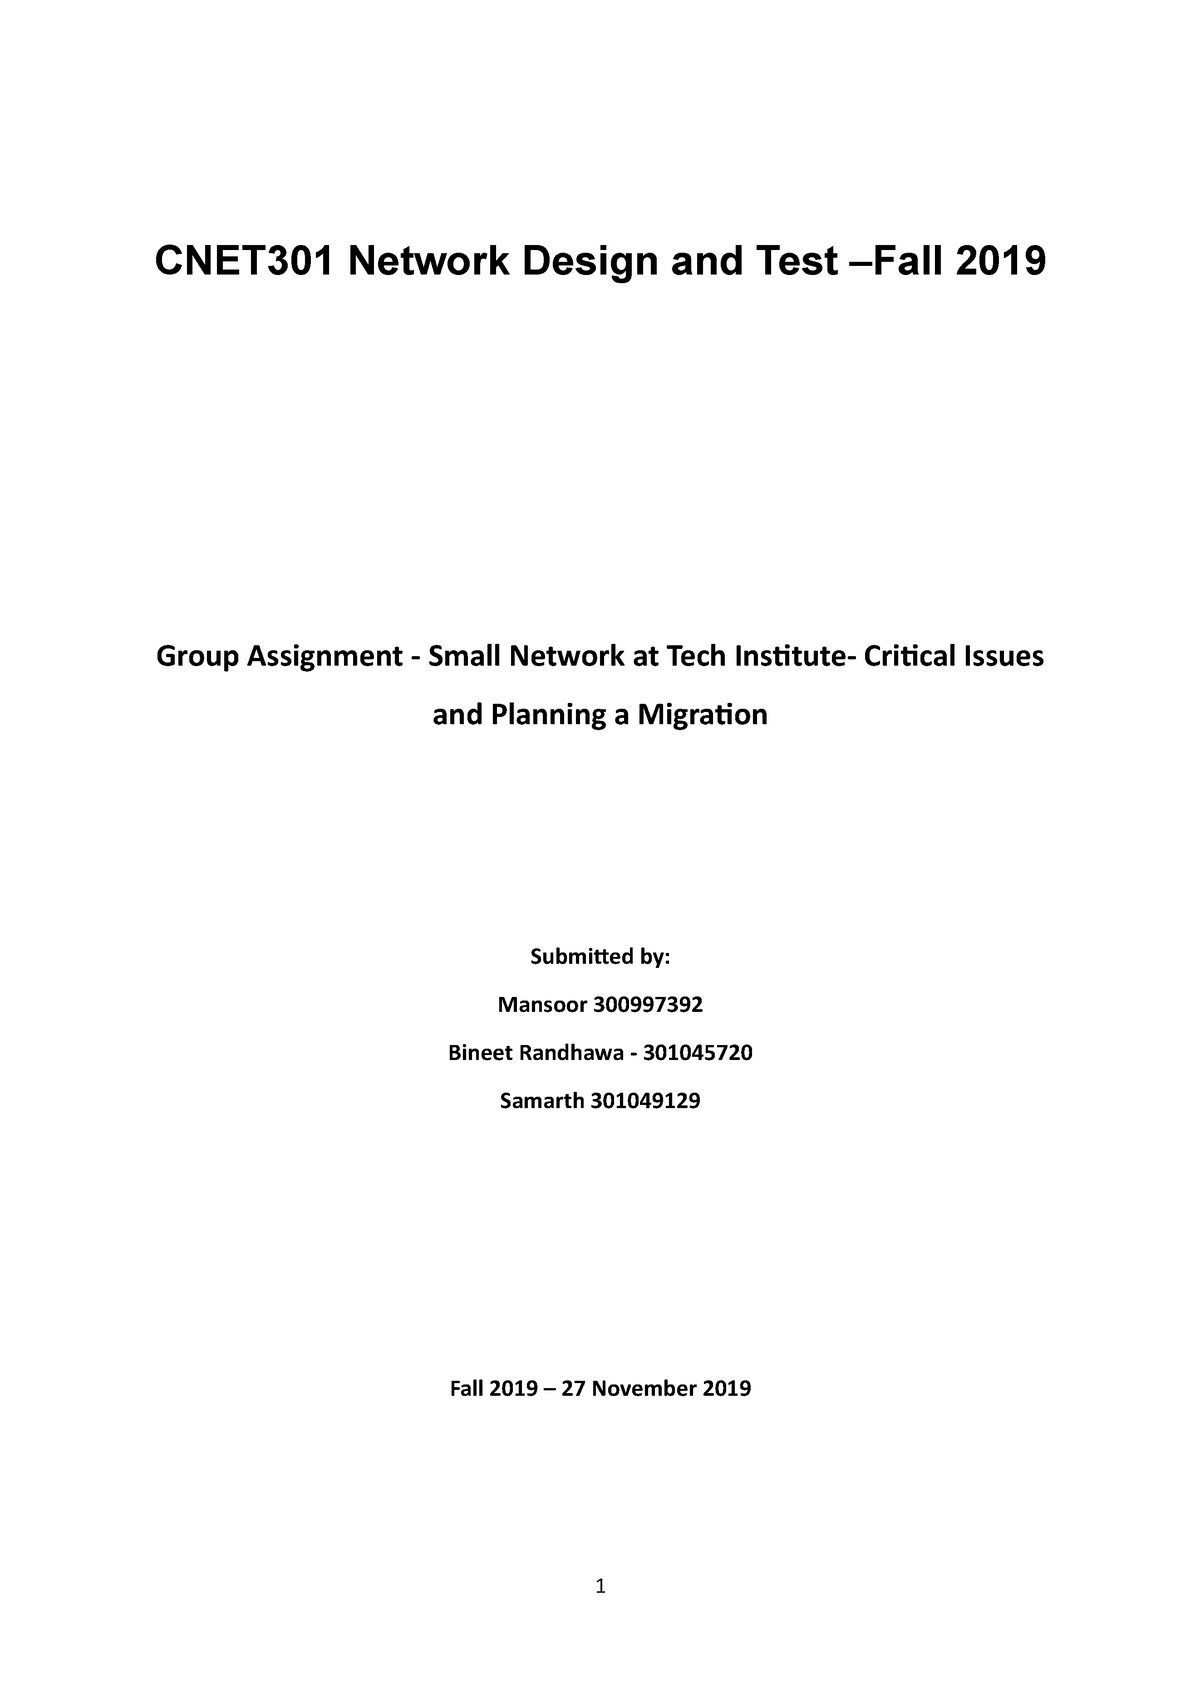 assignment network design